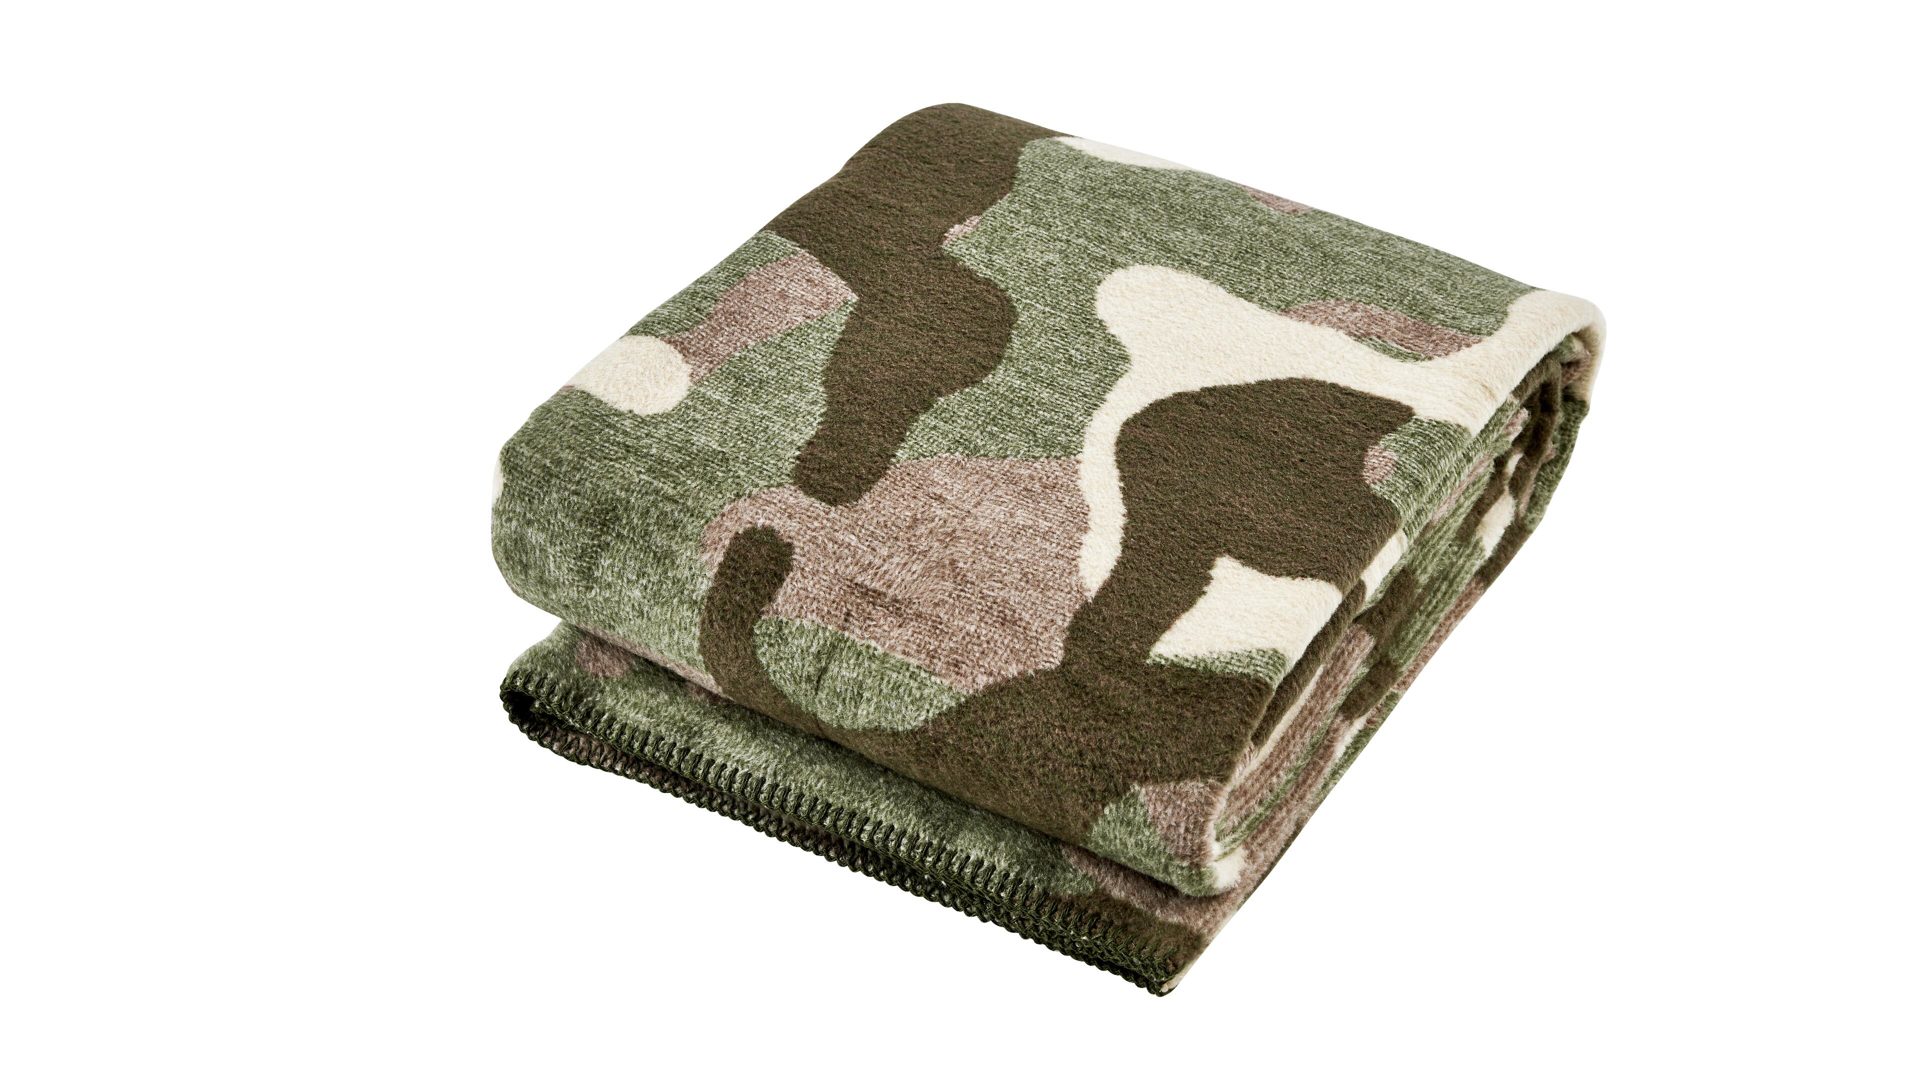 Wohndecke Done® by karabel home company aus Stoff in Braun Done Wohndecke Blanket Camouflage braunes Camouflagemuster – ca. 150 x 200 cm